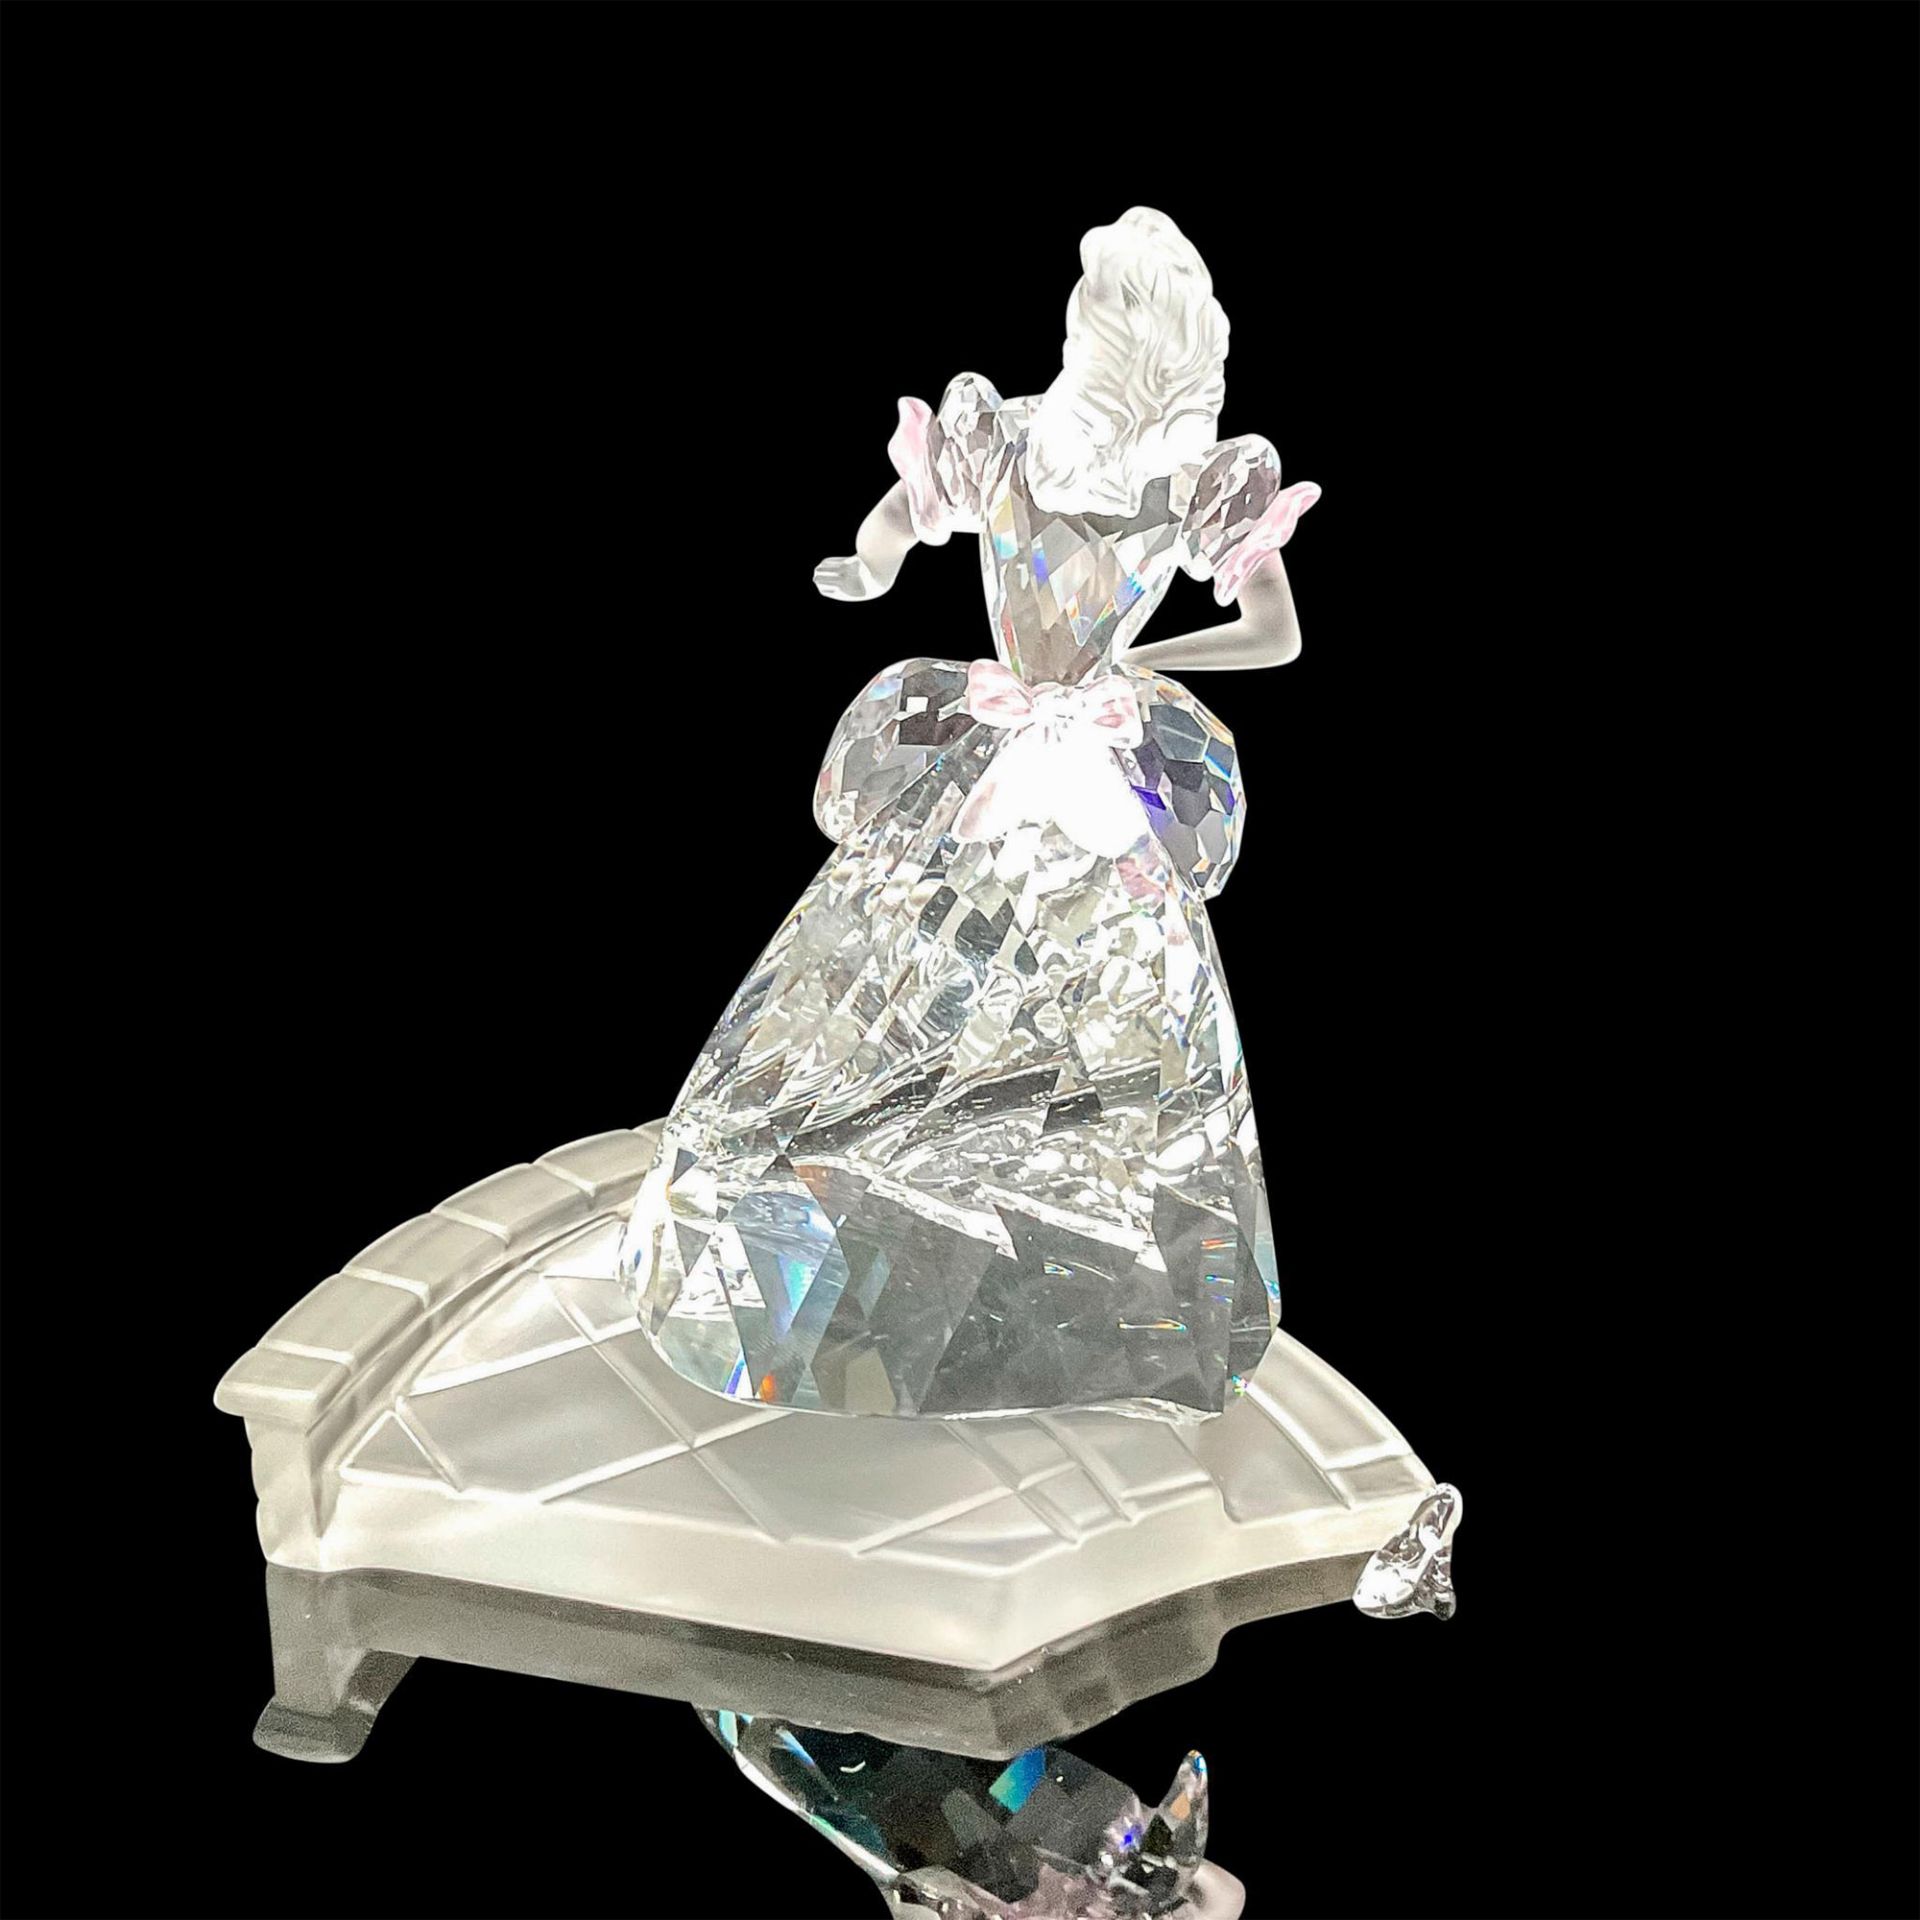 Swarovski Crystal Figurine, Cinderella with Glass Slipper - Image 3 of 5